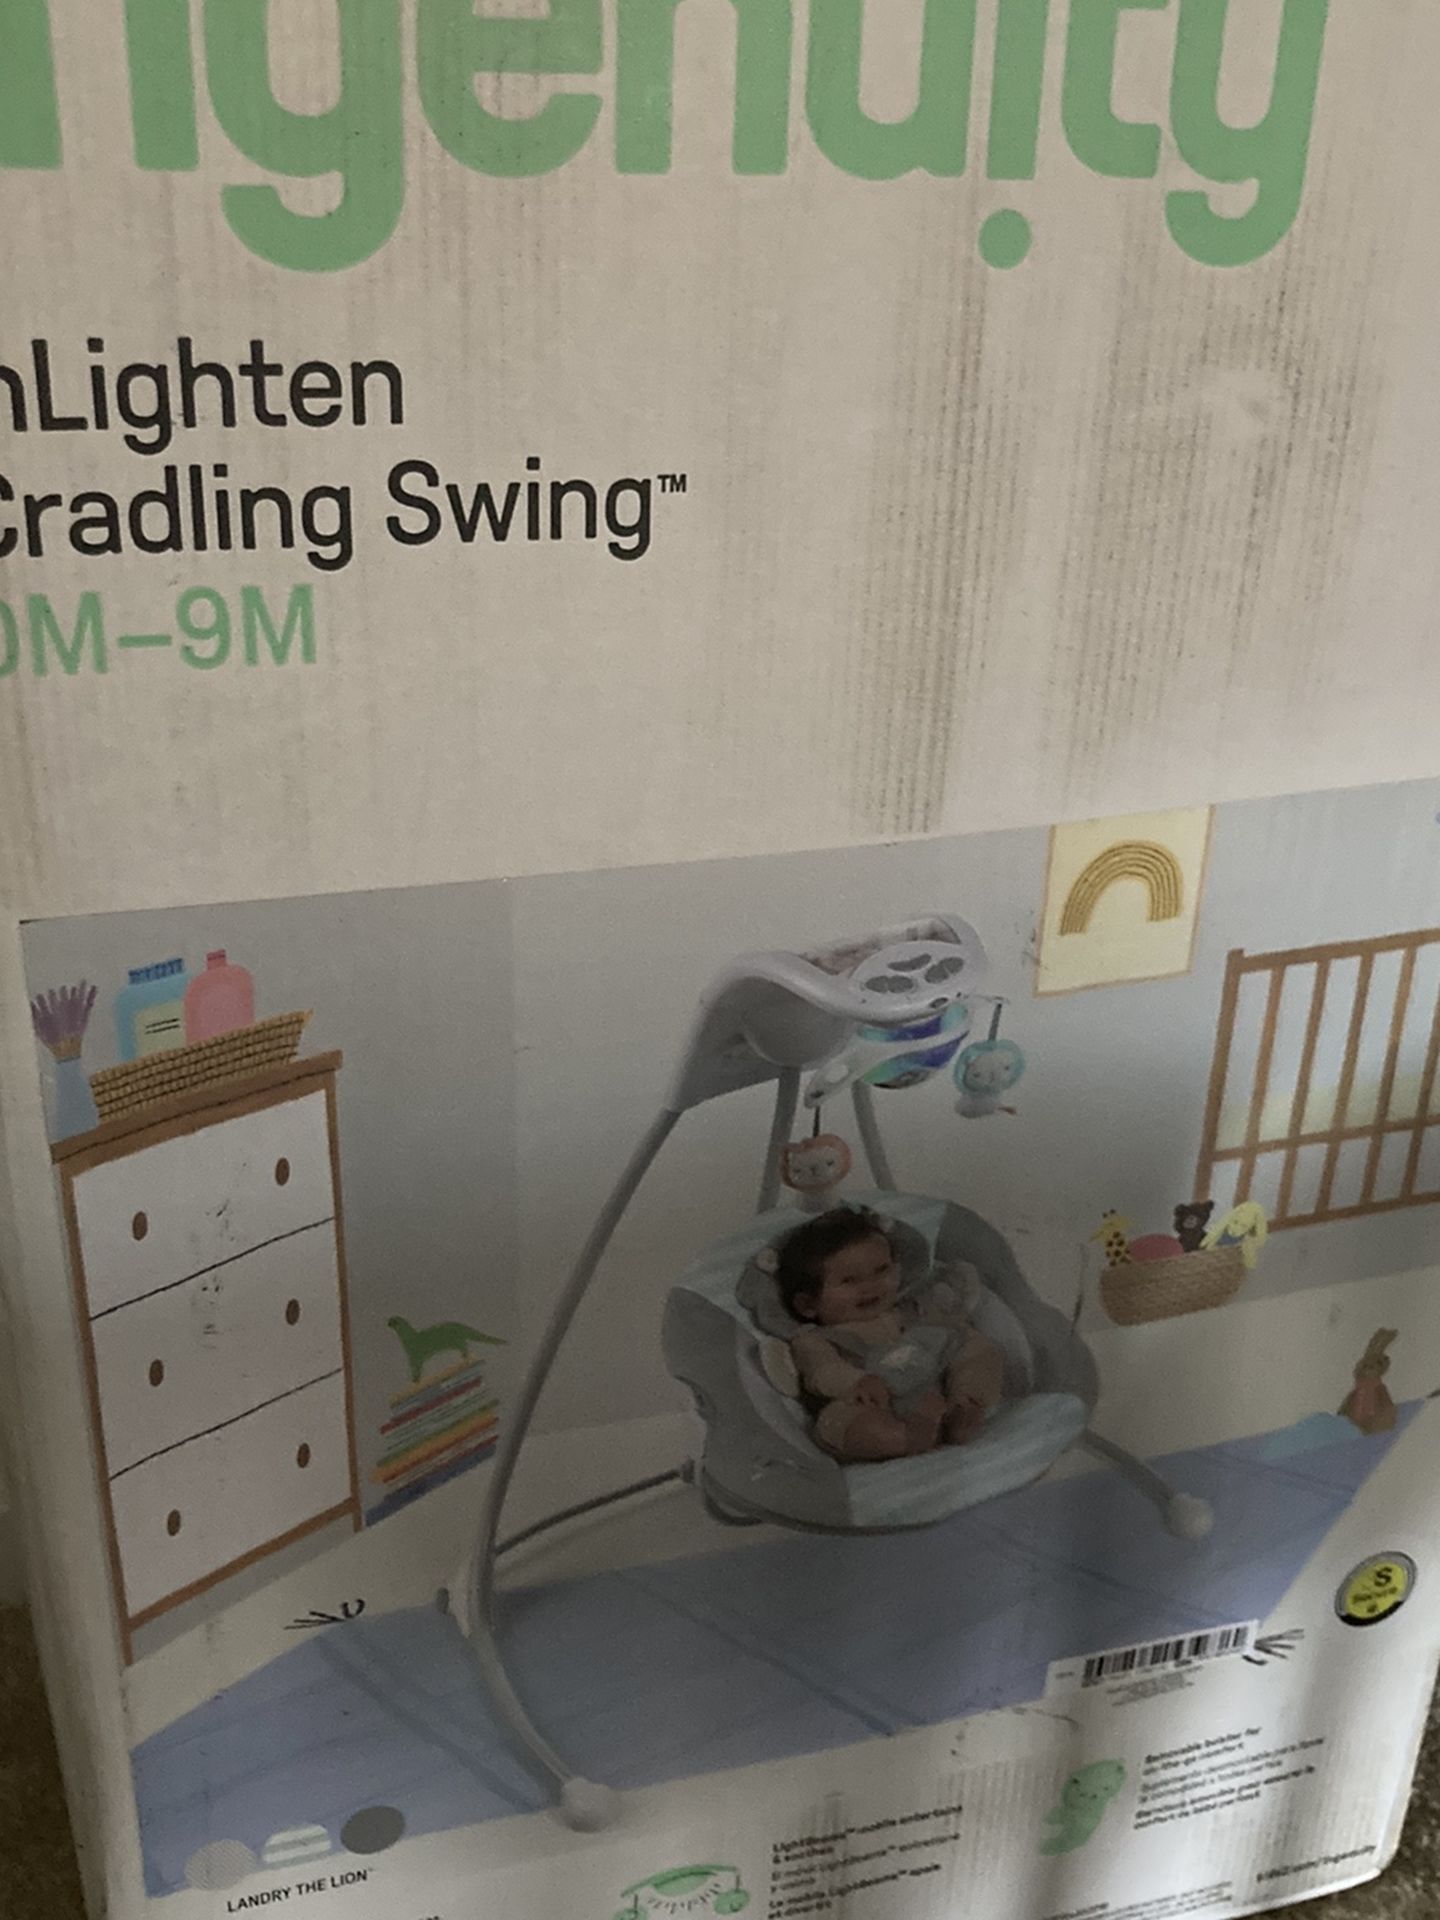 Inlighten Cradling Swing